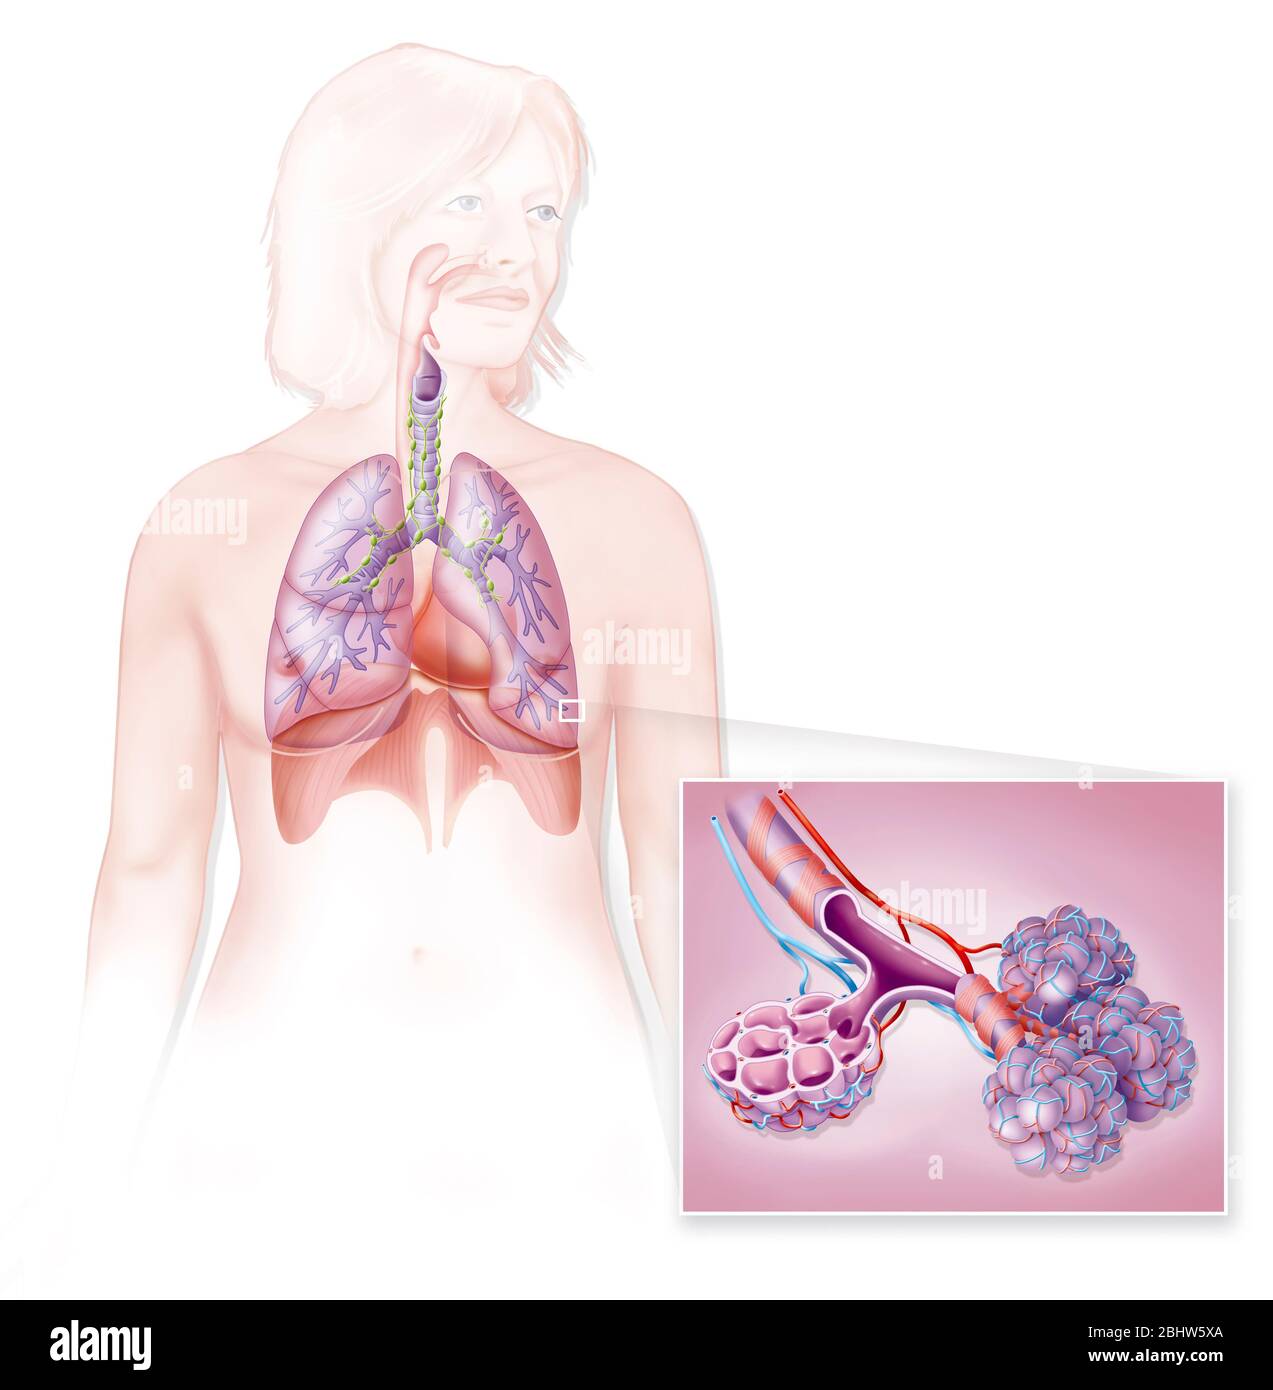 Medizinische Darstellung der Atemwege und Alveolen. Das Atmungssystem ist in der Silhouette einer Frau dargestellt. Wir können in Transparenz sehen, die Stockfoto